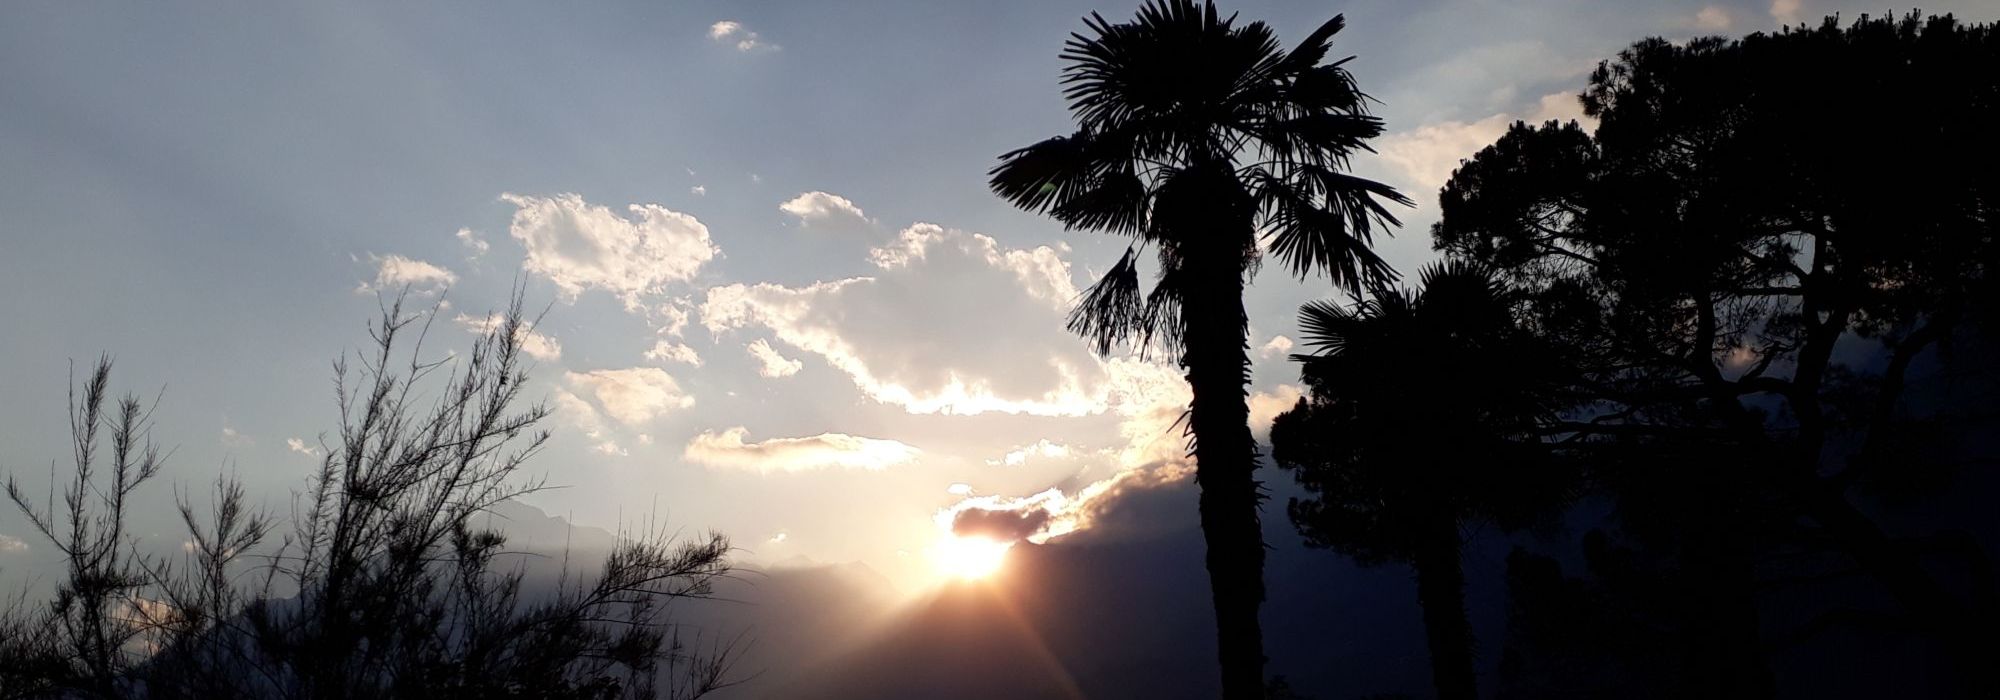 Foto „Abend mit Palme“ aus: Natur - Landschaften